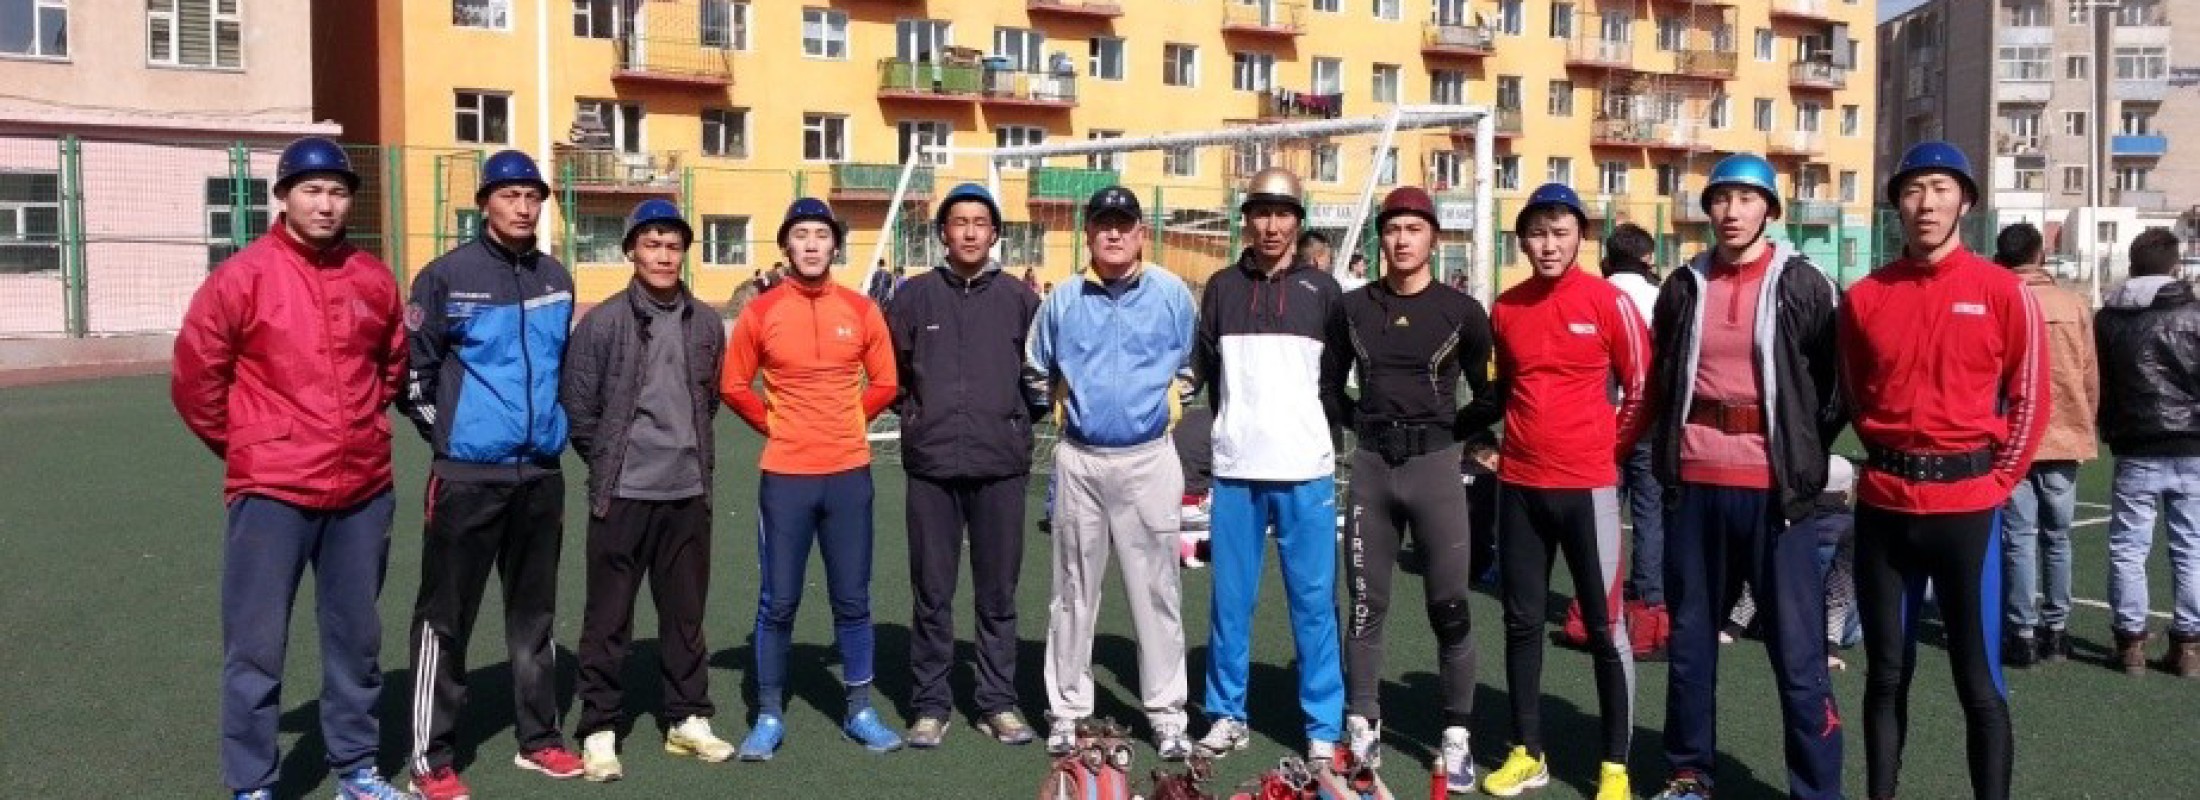 Гал унтраах техникийн олон төрөлт спортын Монгол Улсын шигшээ баг байгуулагдлаа